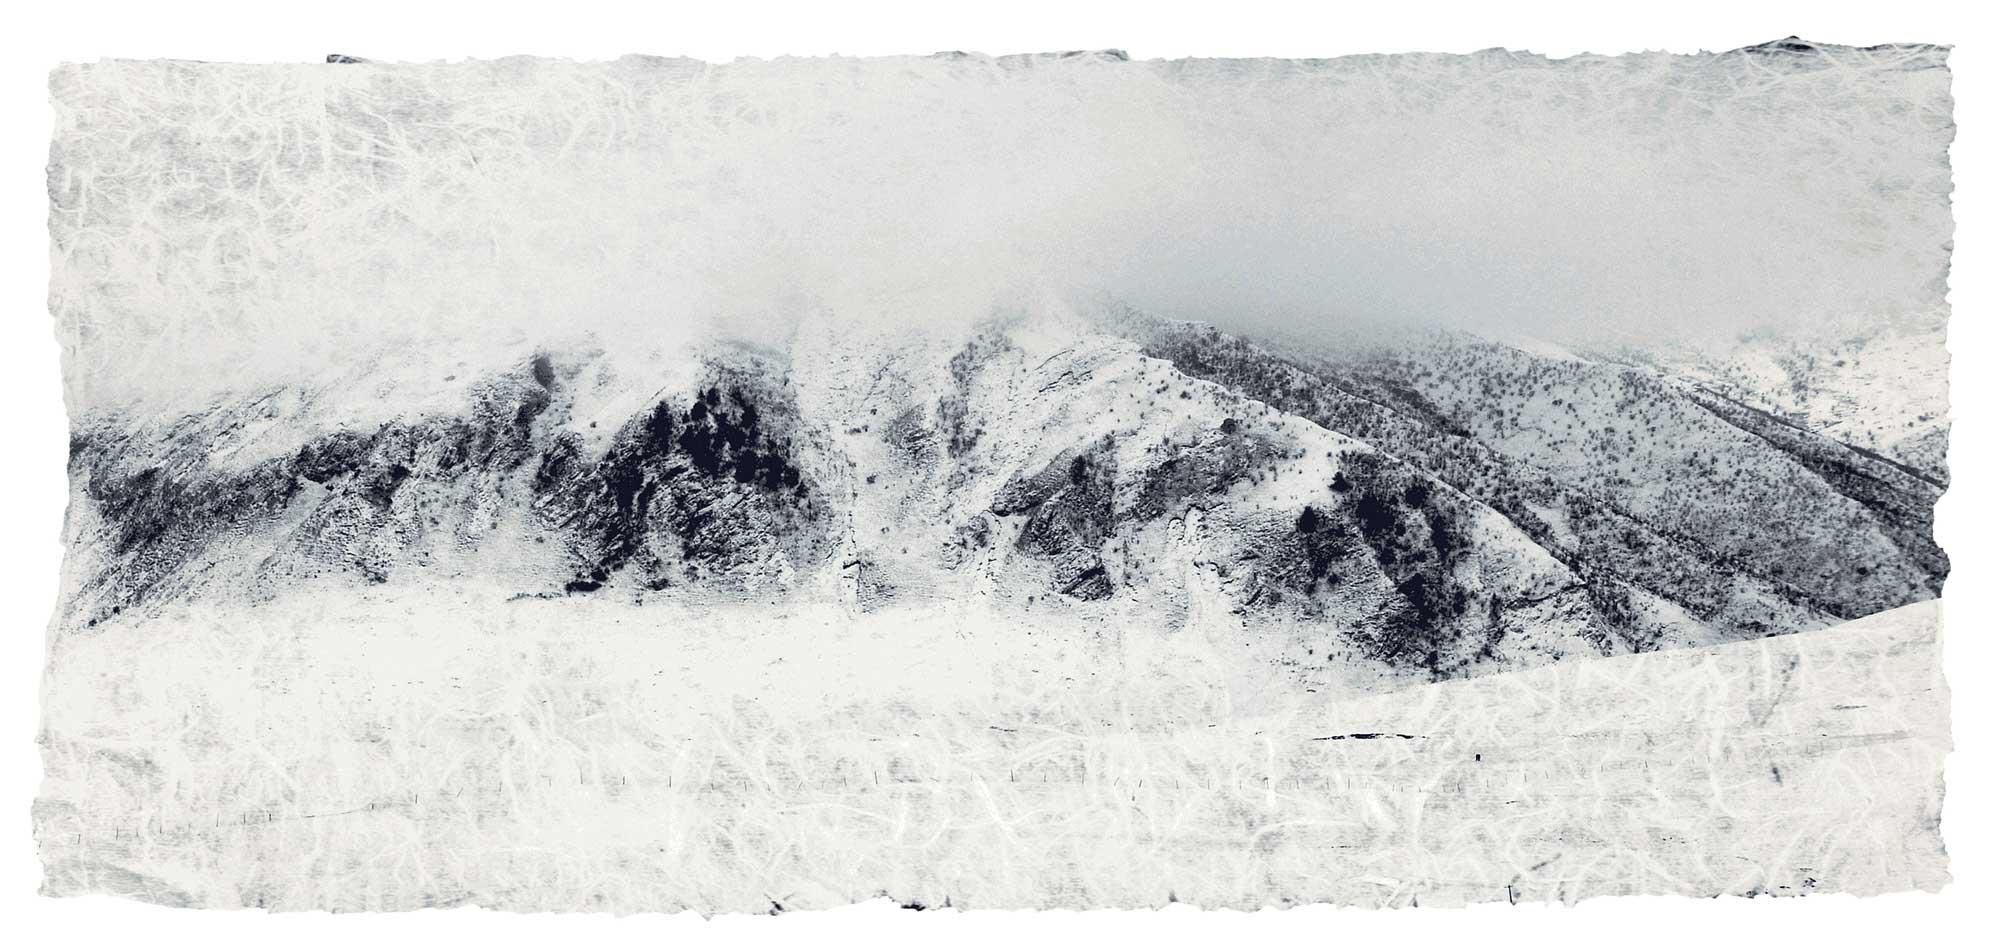 雪霁 After the Snow has Fallen